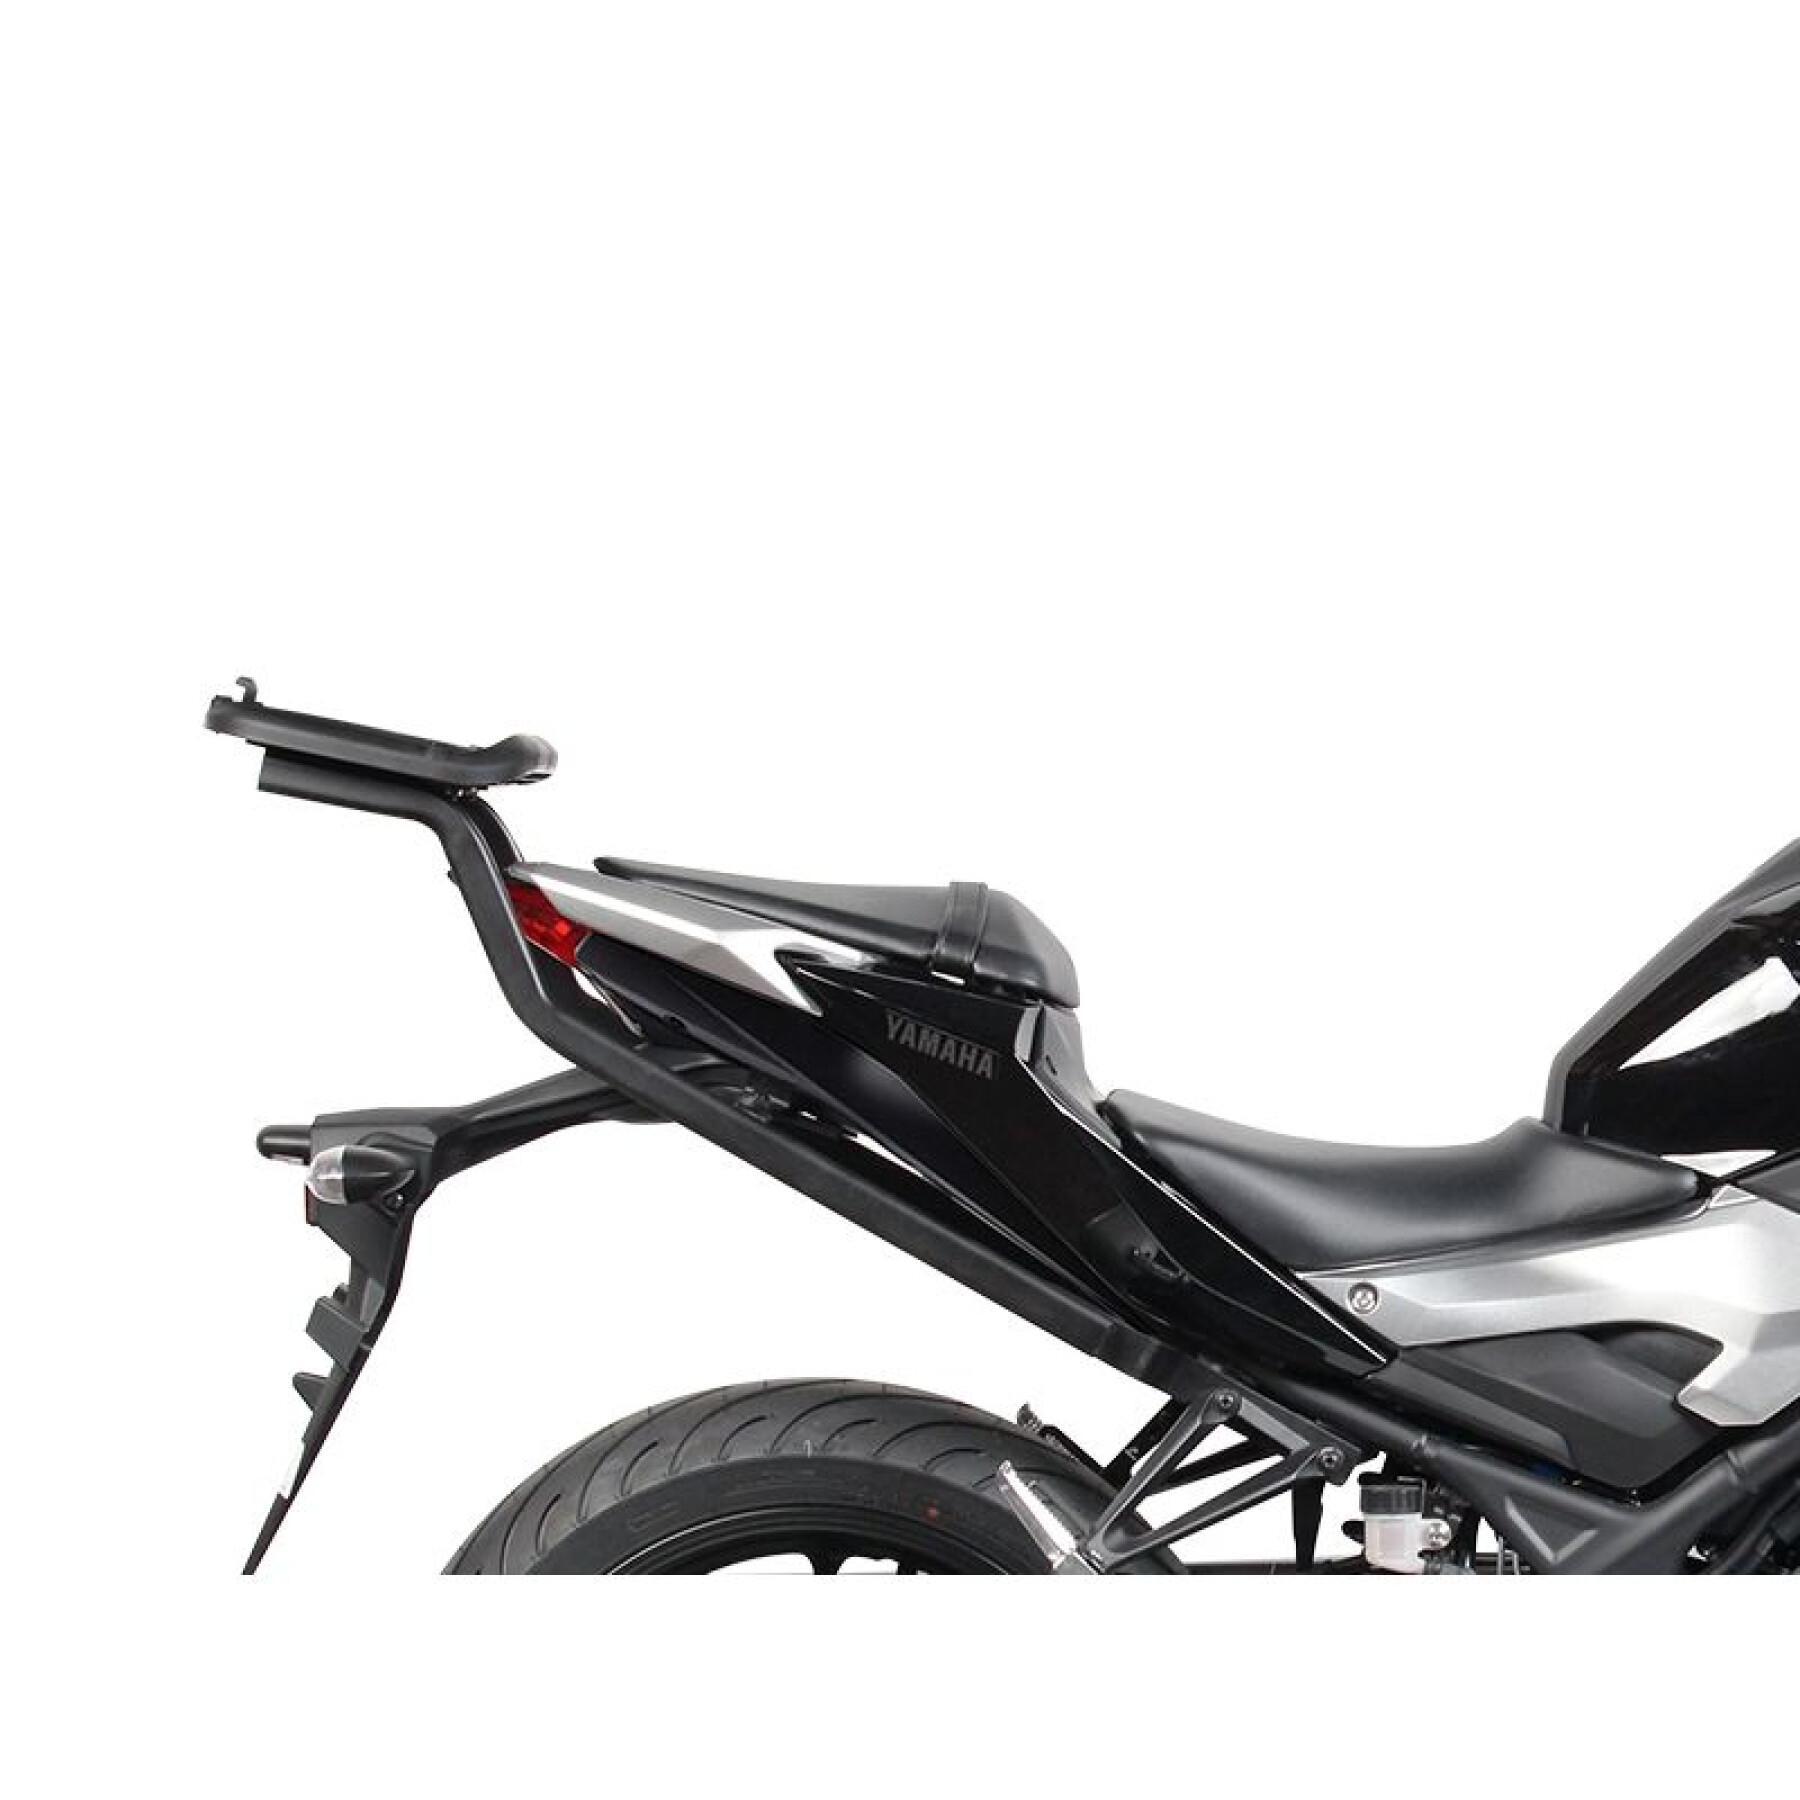 Supporto bauletto moto Shad Yamaha MT03 (da 15 a 20)